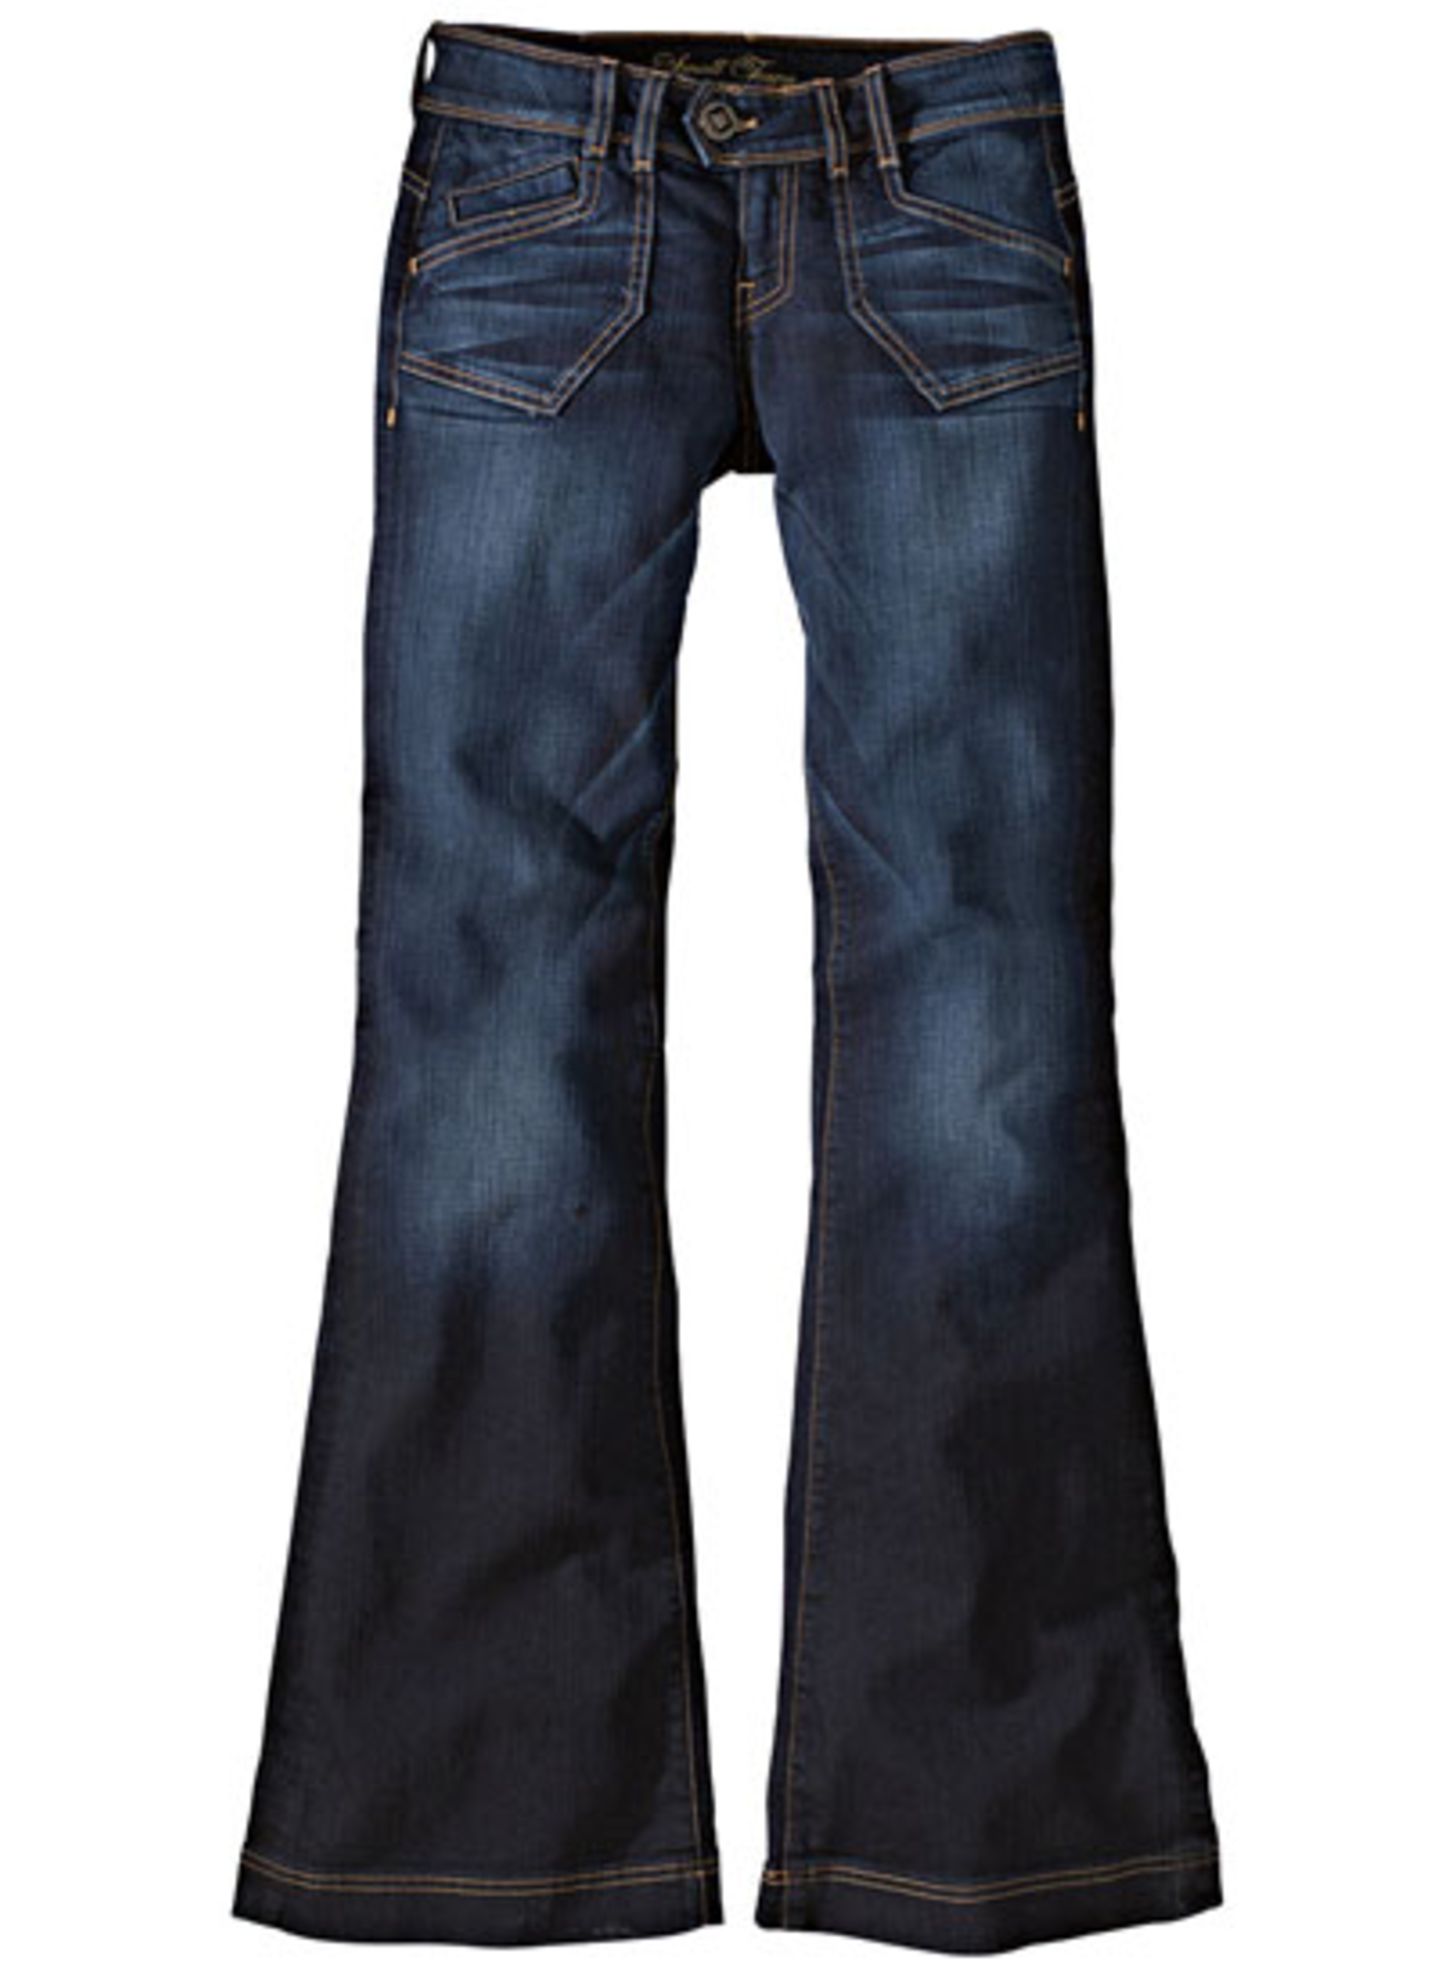 Jeans mit ausgestelltem Bein von Small Town über Conley's, um 210 Euro.